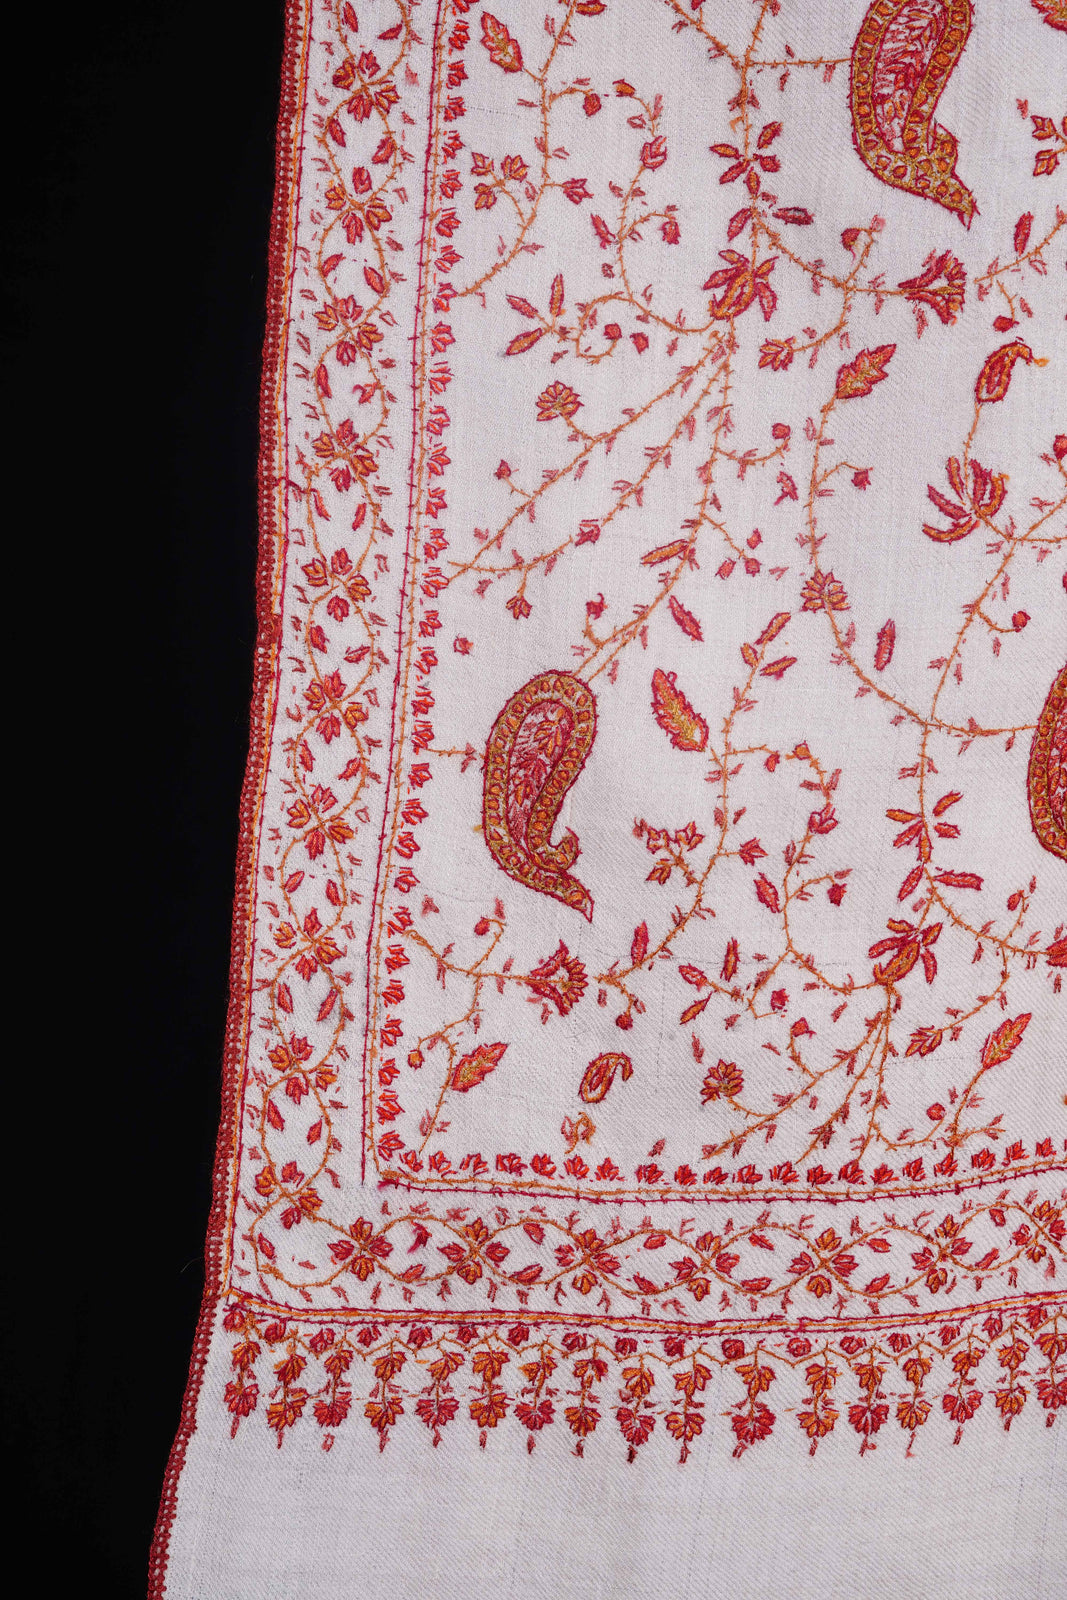 Ivory Jali Embroidery Cashmere Pashmina Shawl